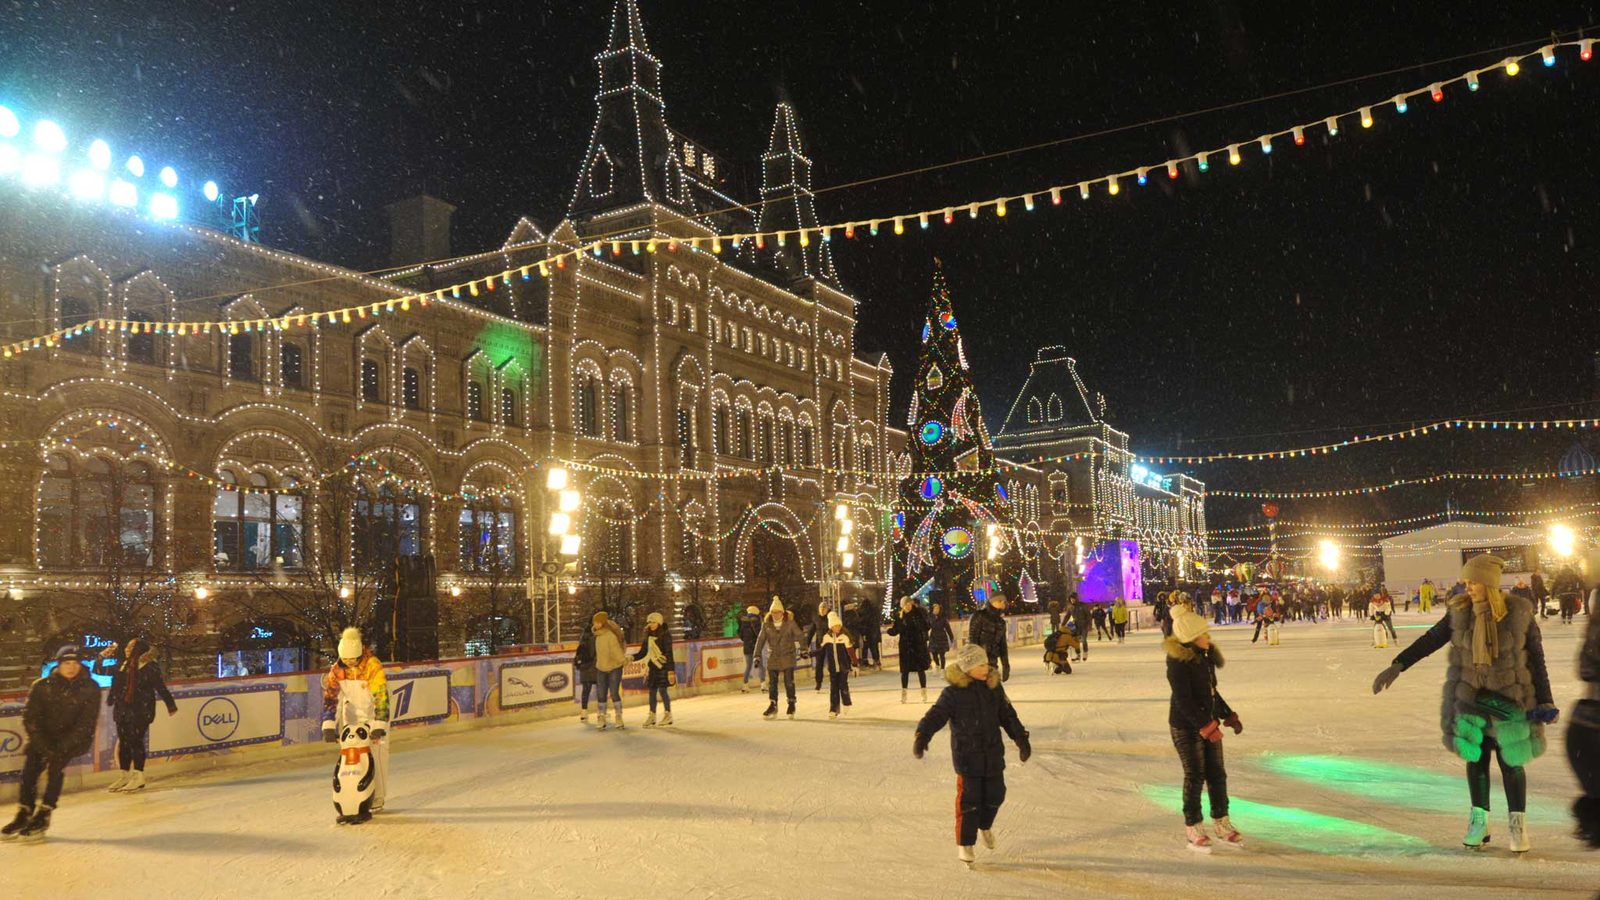 В начале зимы в Москве впервые пройдет фестиваль российского авторского кино «Зимний»